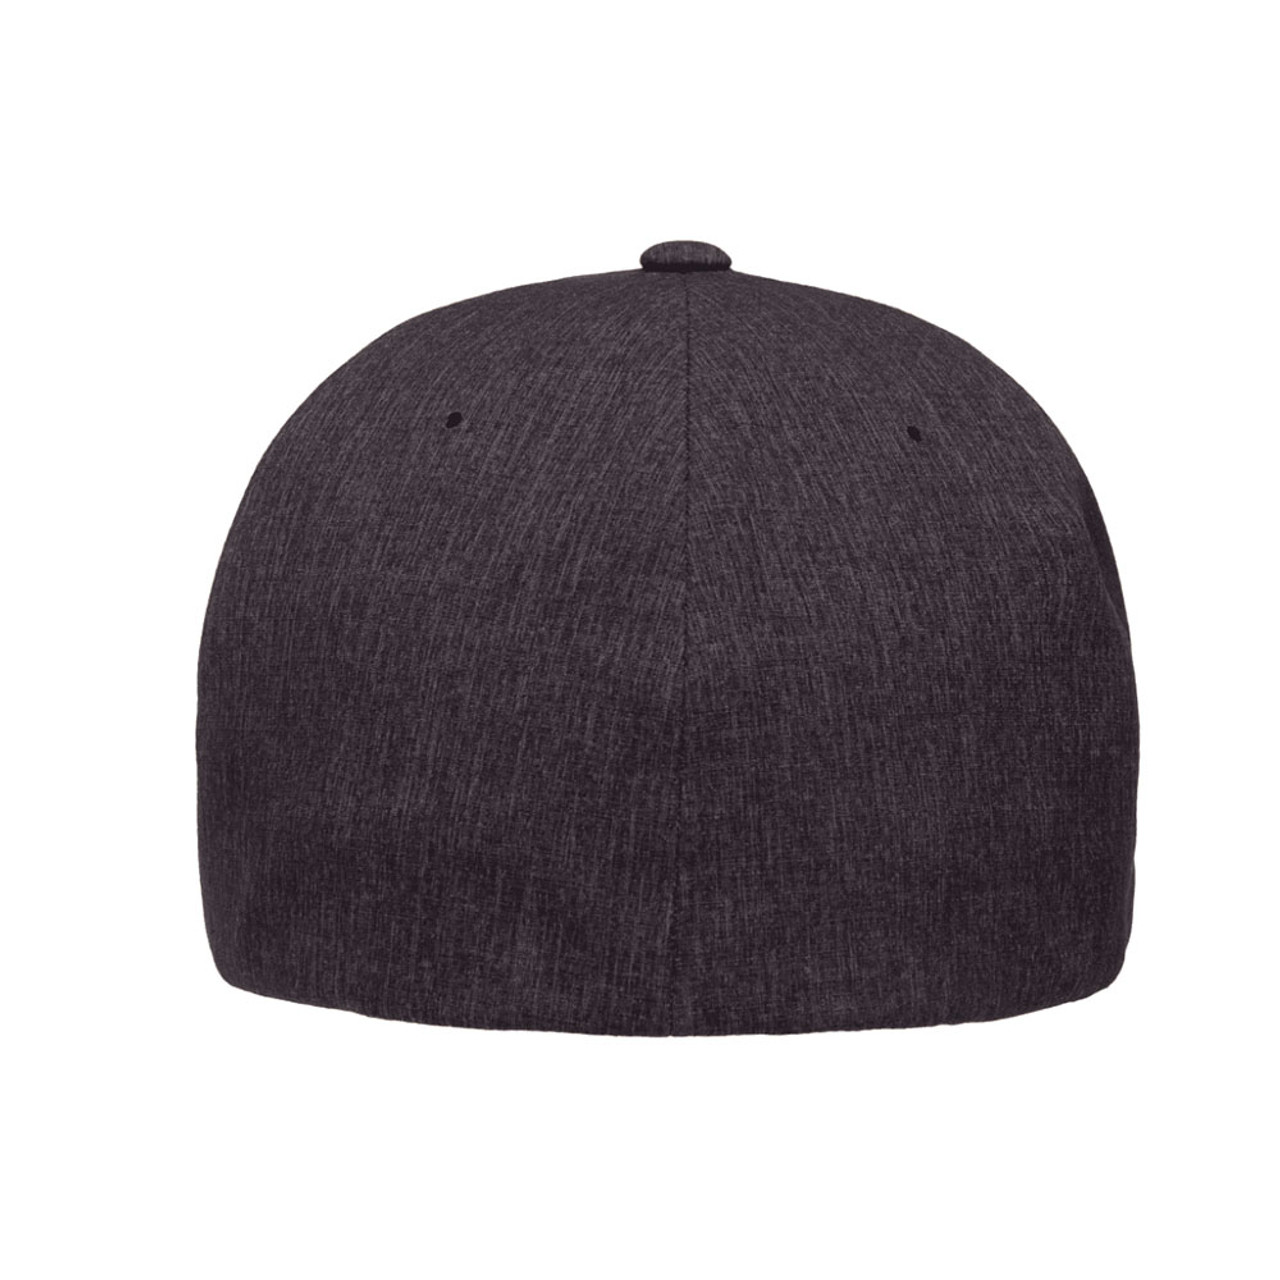 Flexfit Delta Carbon Cap - The Jac One Hat Dozen 